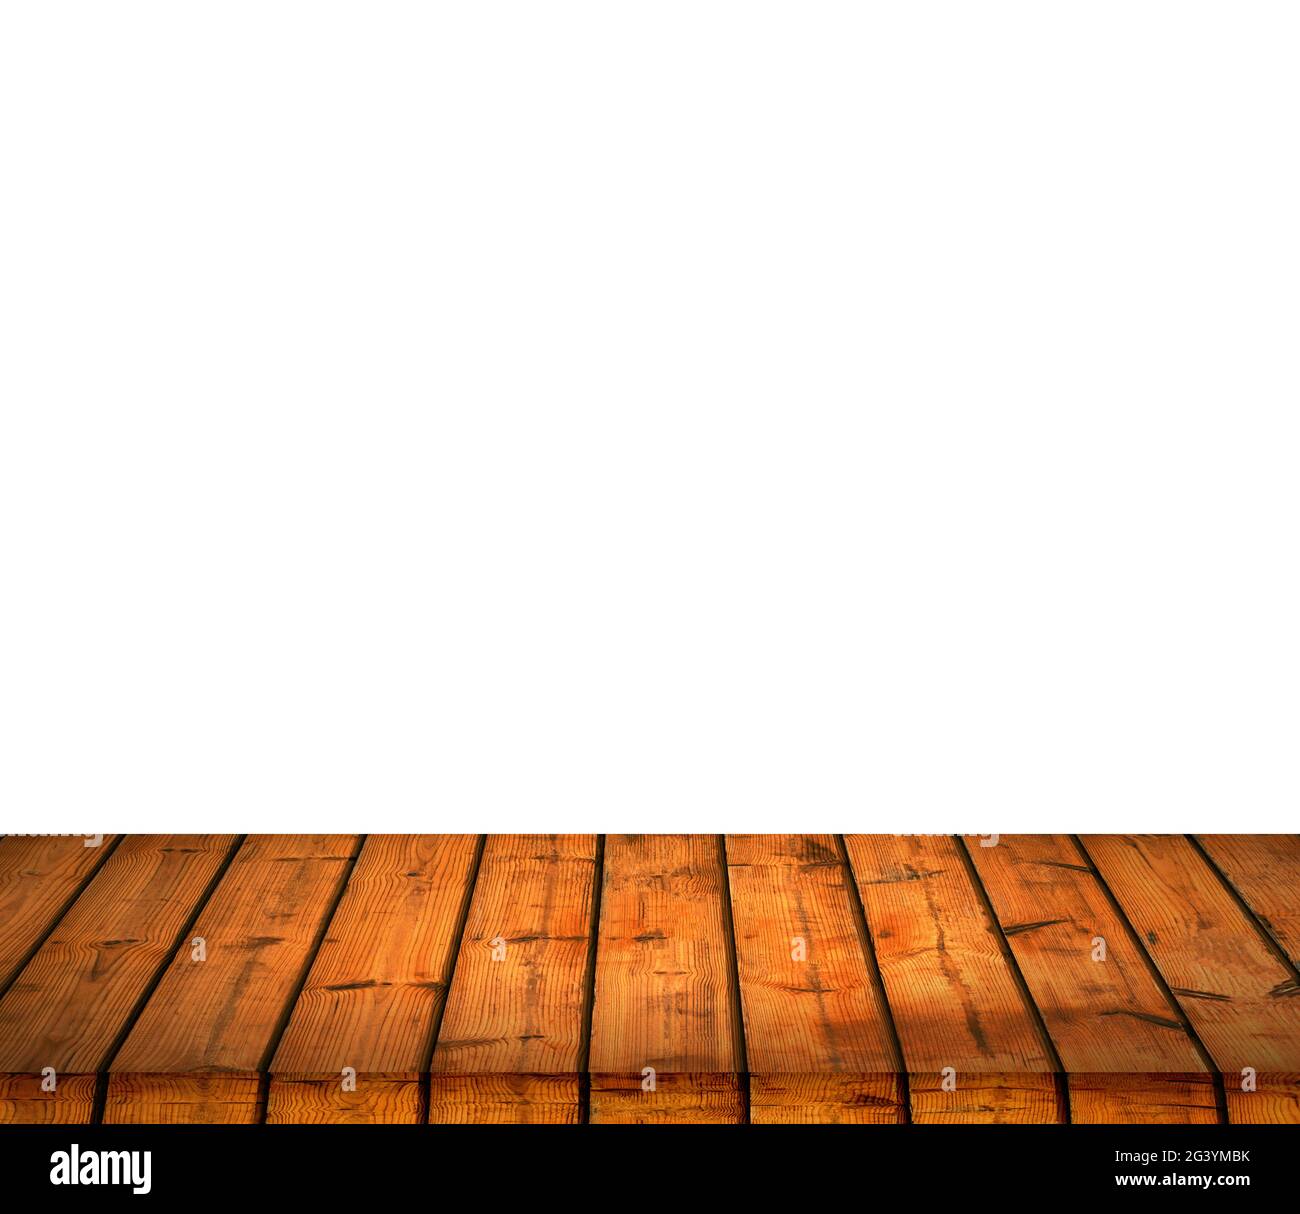 Tavolo vuoto in legno in un giardino estivo soleggiato per il posizionamento del prodotto o montaggio con messa a fuoco al piano del tavolo nel foregroun Foto Stock